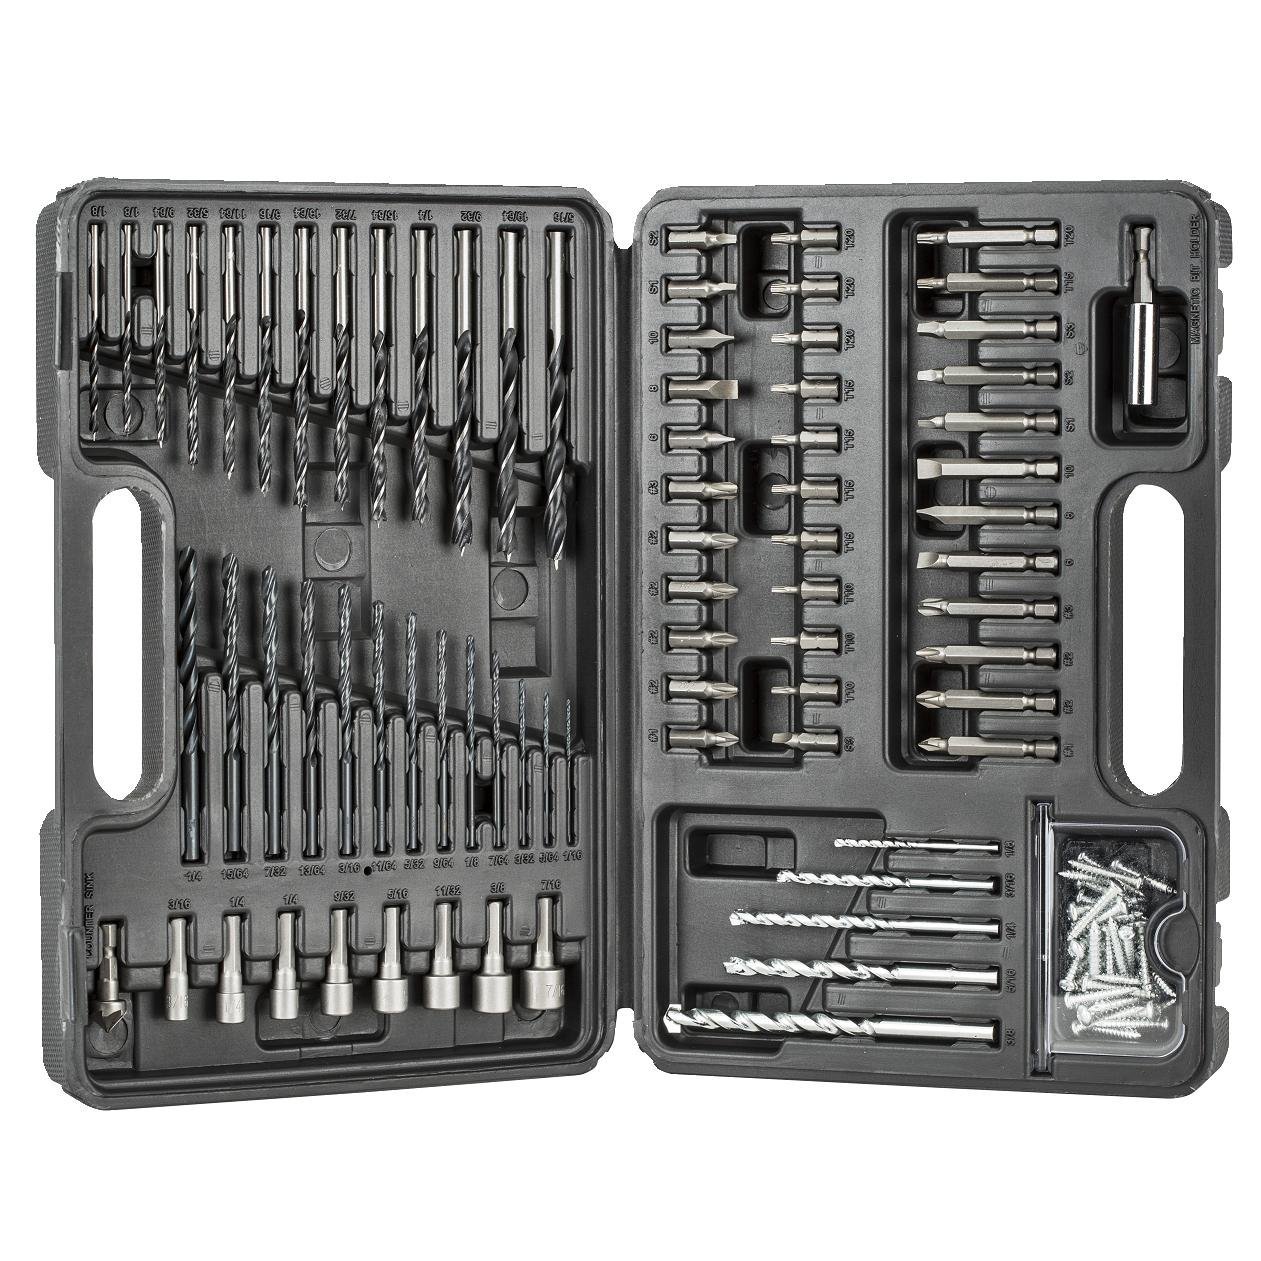 Black & Decker 109-piece drill bit tool kit for $16